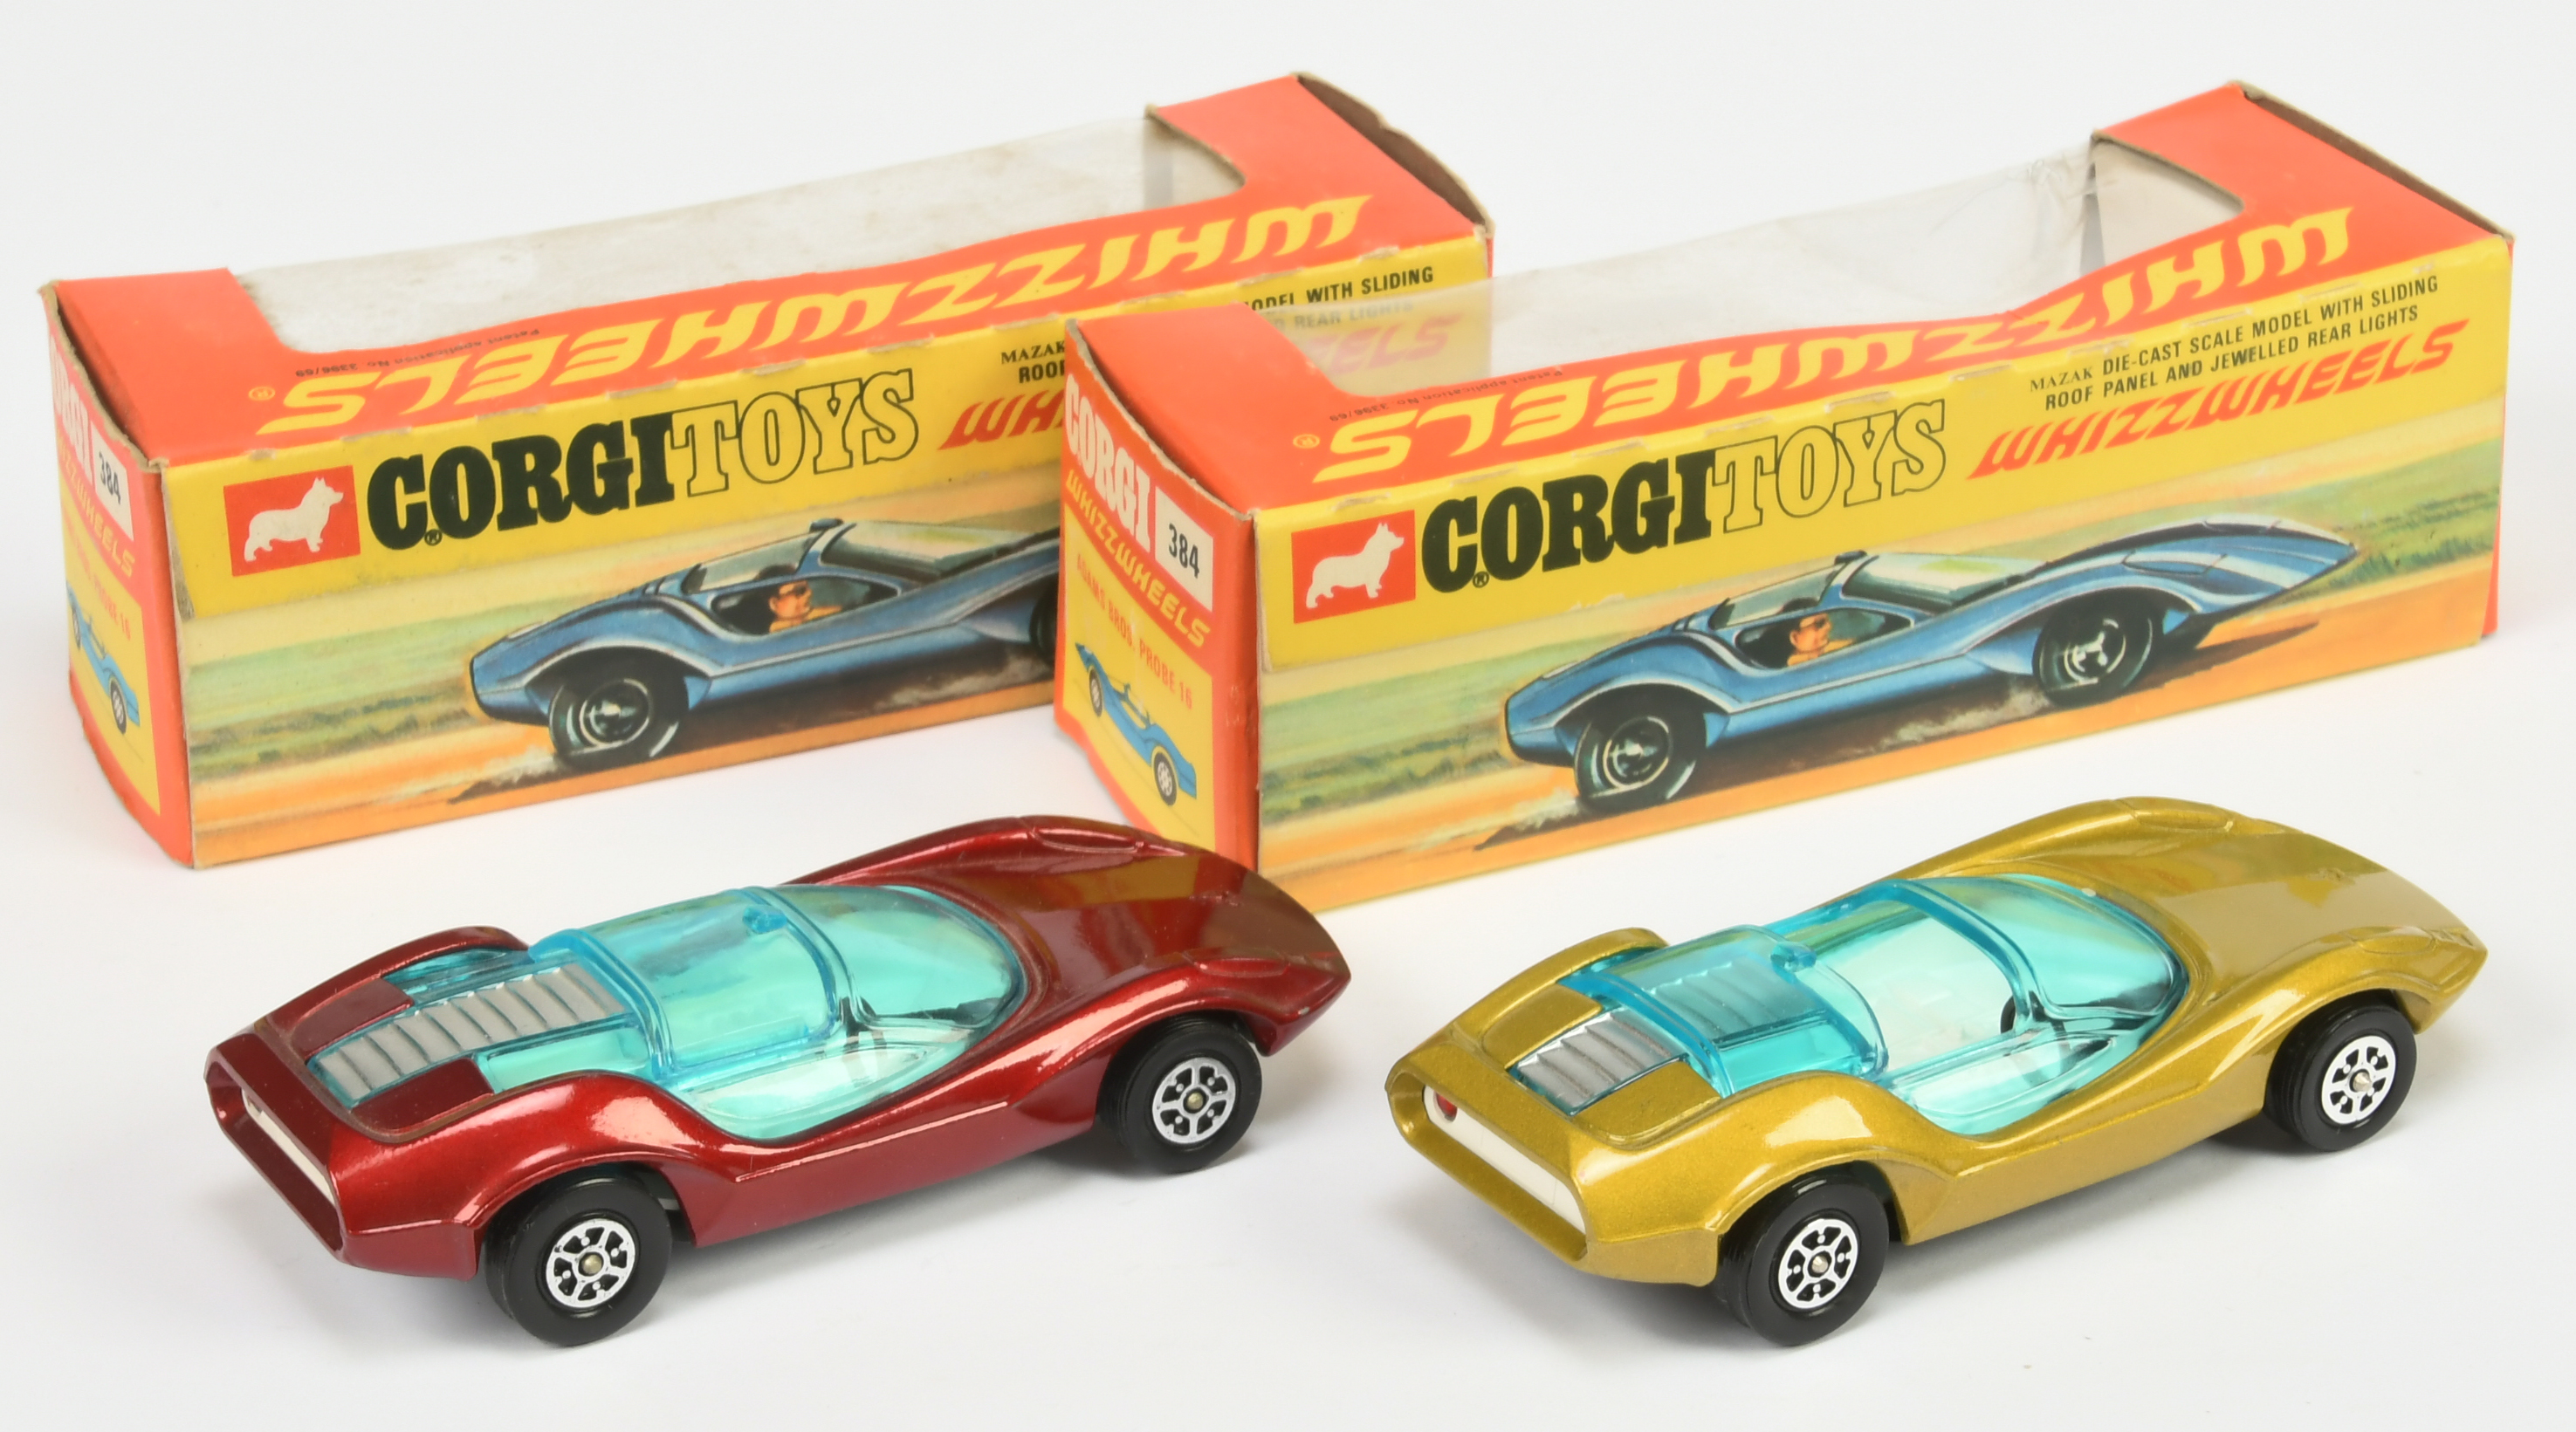 Corgi Toys Whizzwheels 384 Adams Bros Probe 16 A Pair - (1) Metallic Gold-Green, white interior a... - Image 2 of 2